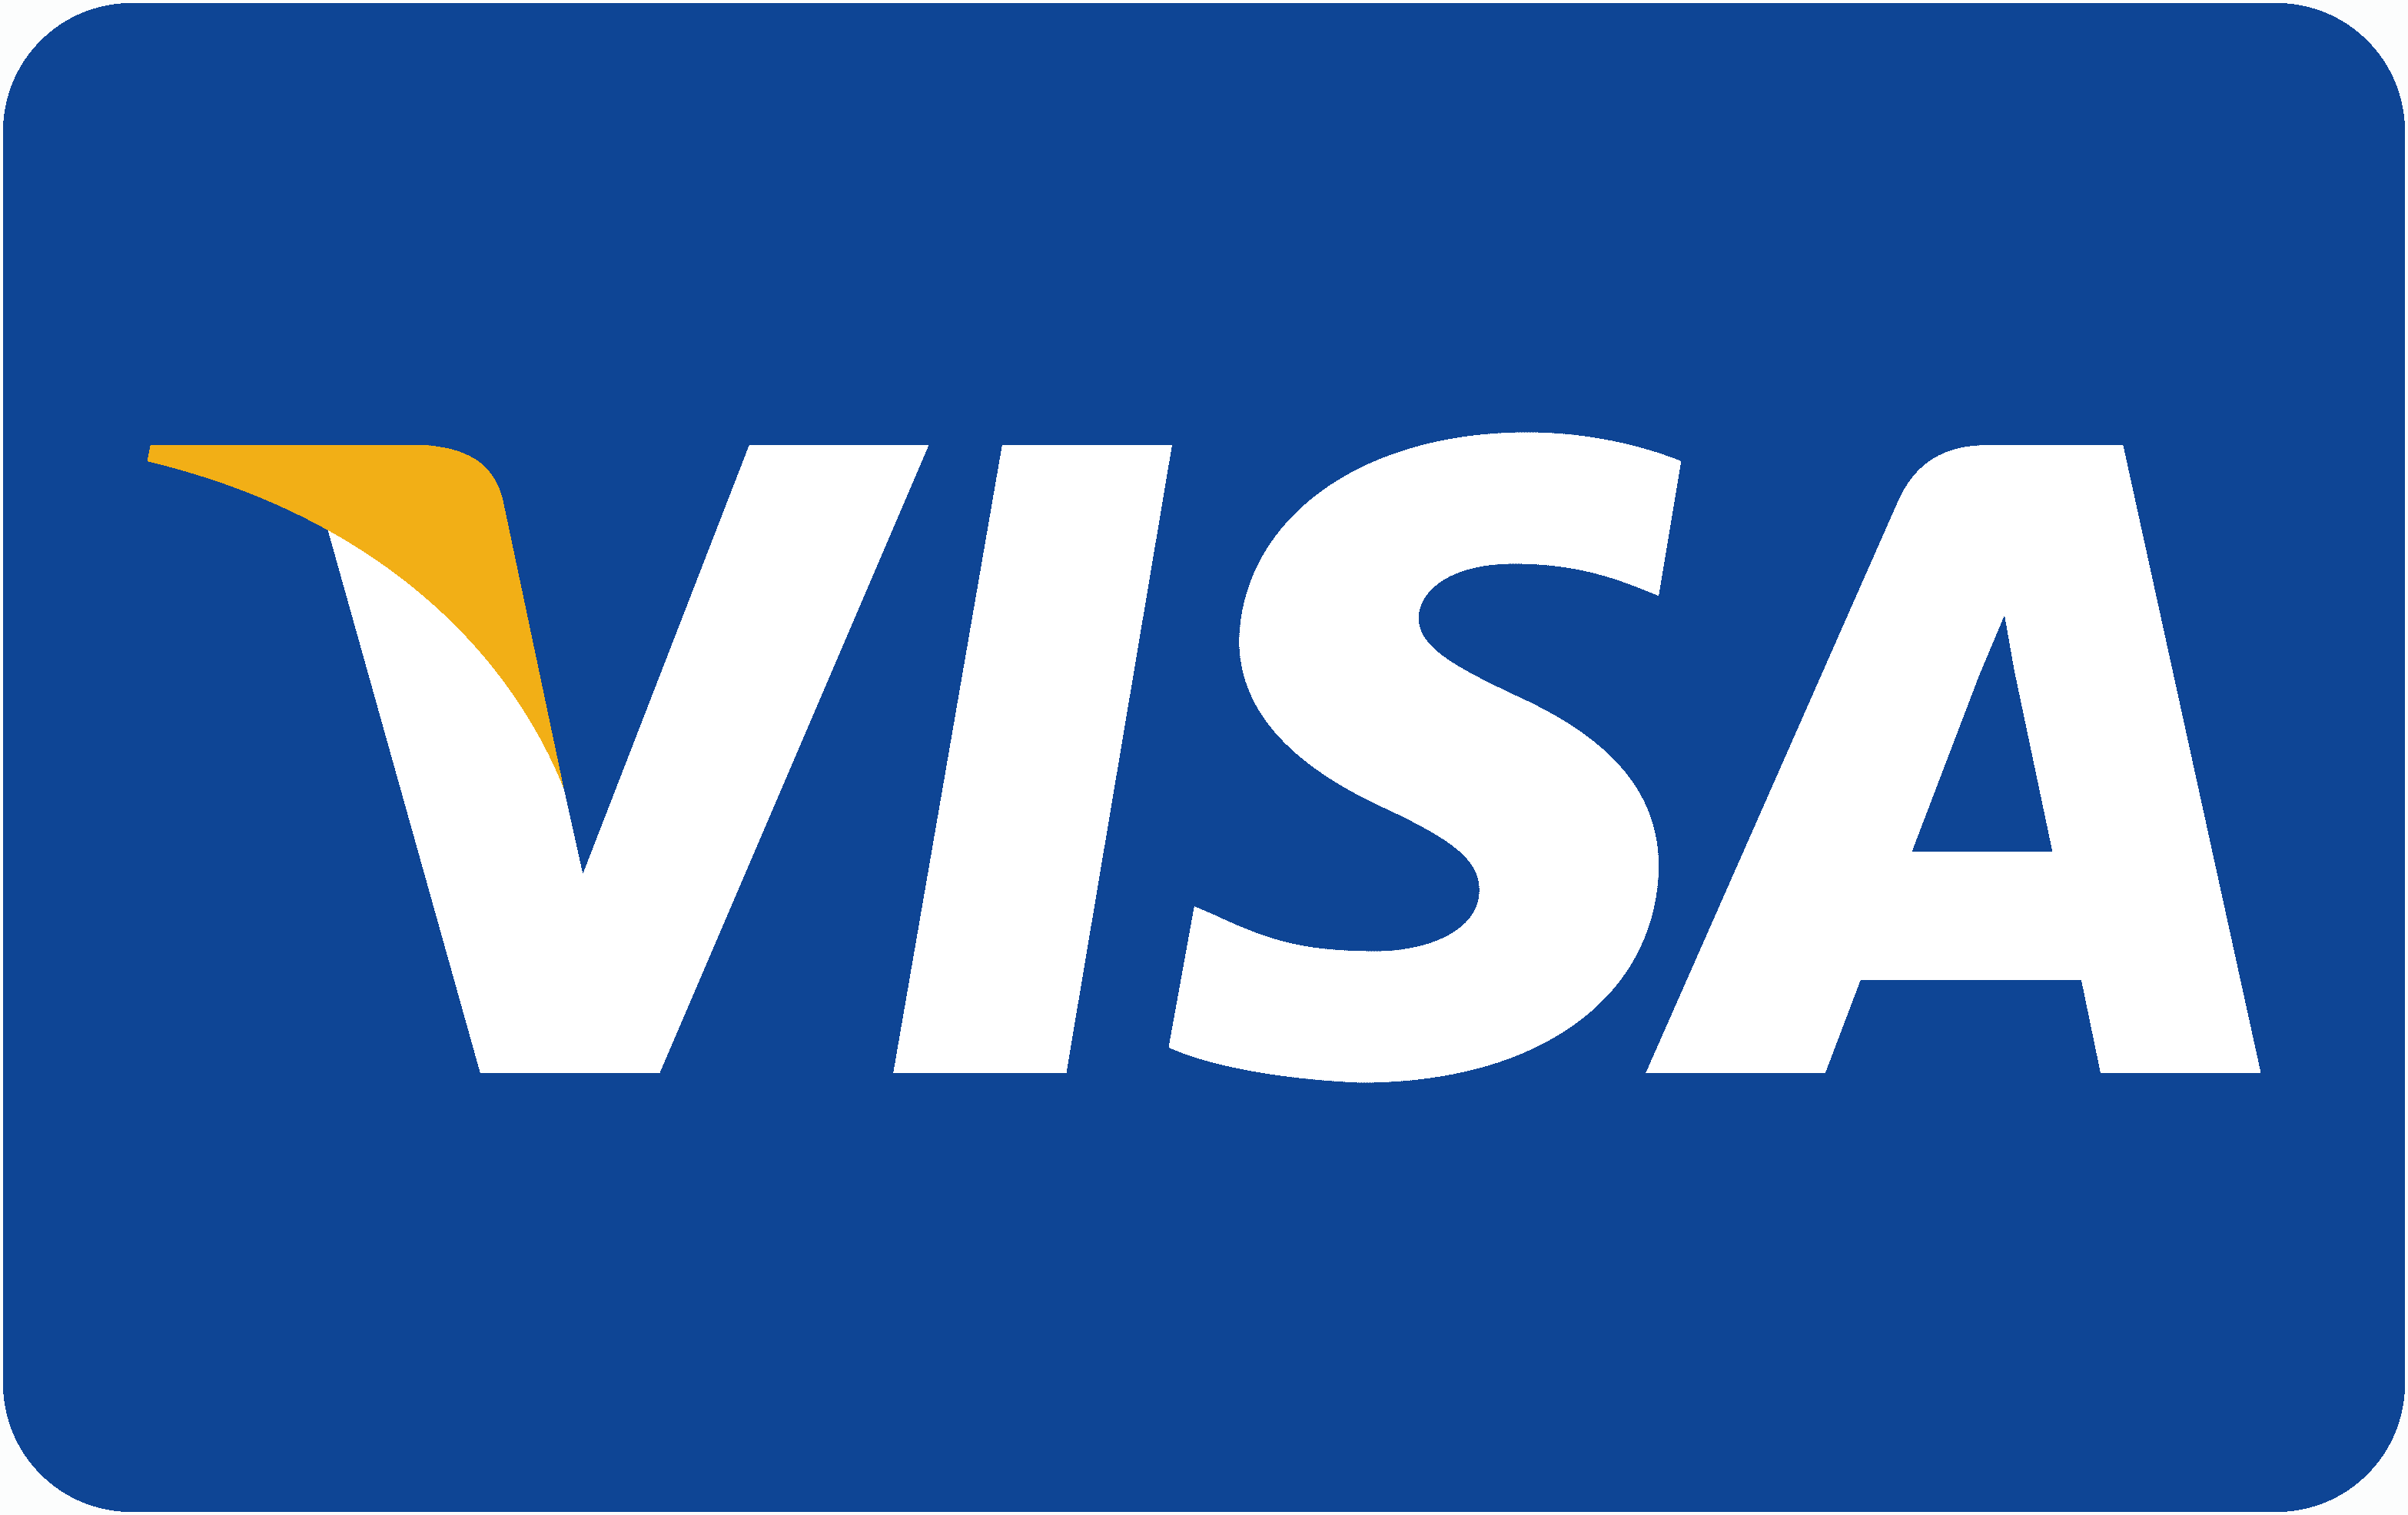 Visa payment. Значок visa. Логотип виза. Visa Signature логотип. Логотип платежной системы visa International.